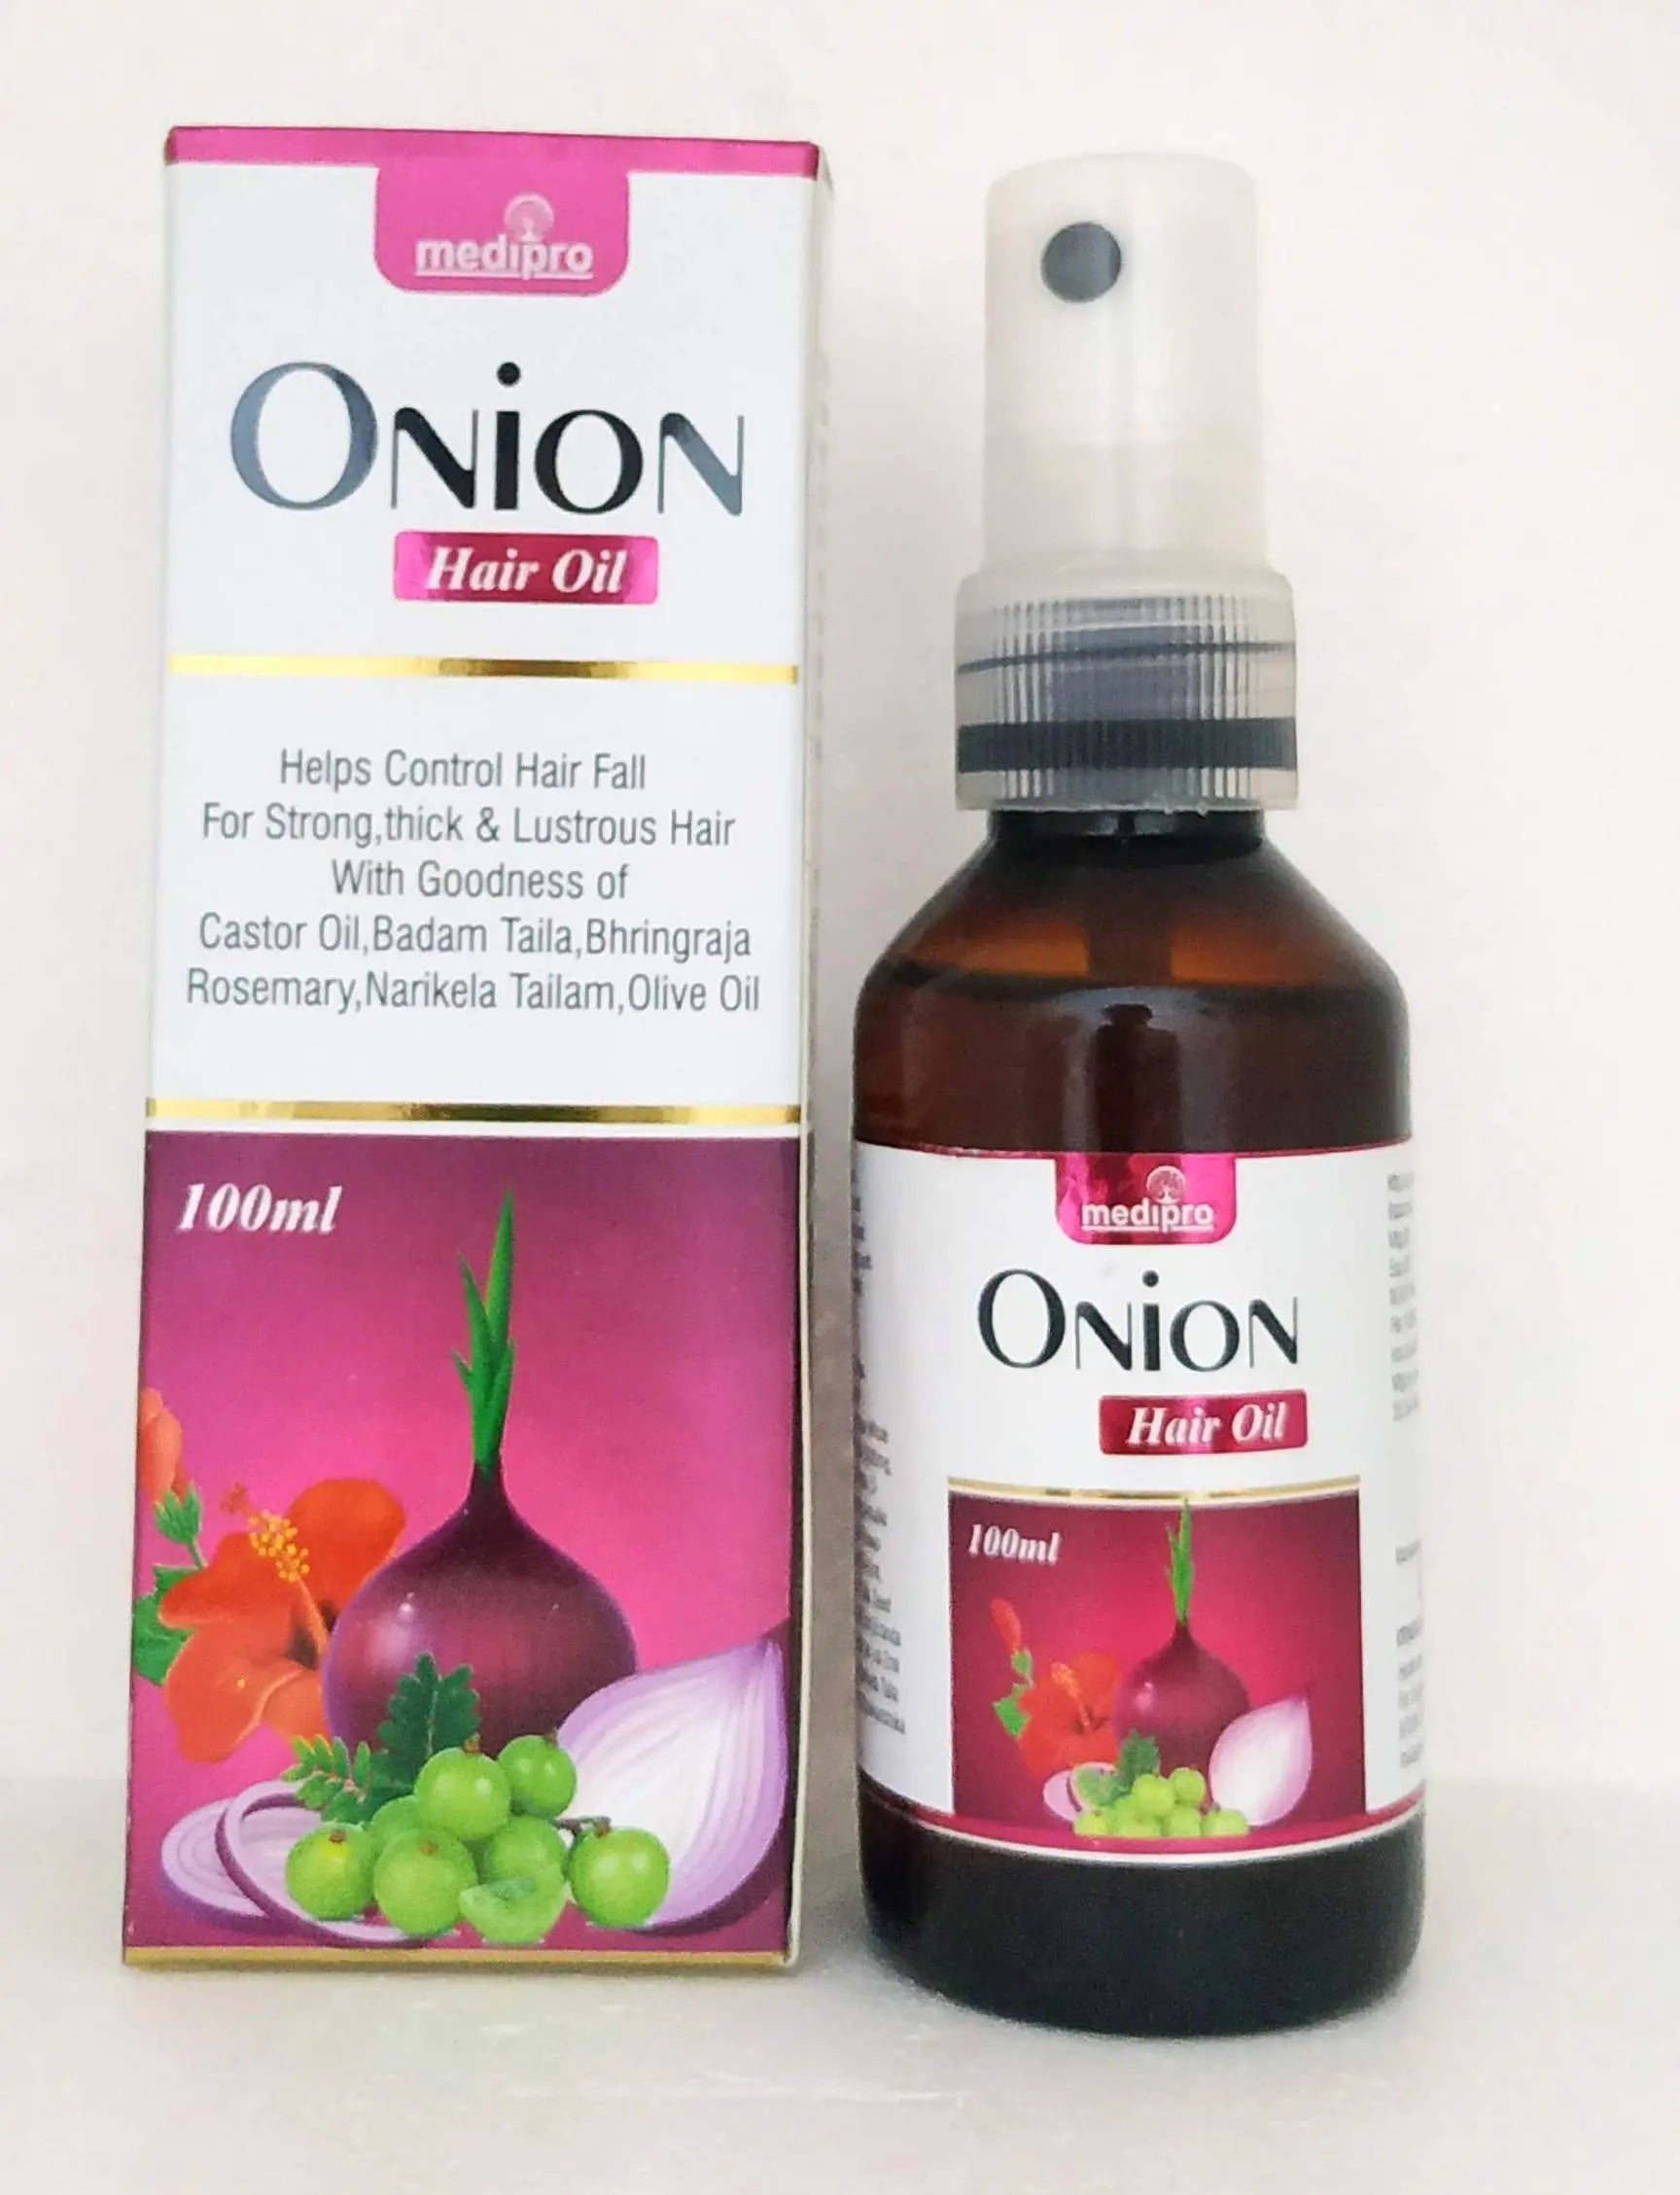 Onion hair oil 100ml Medipro